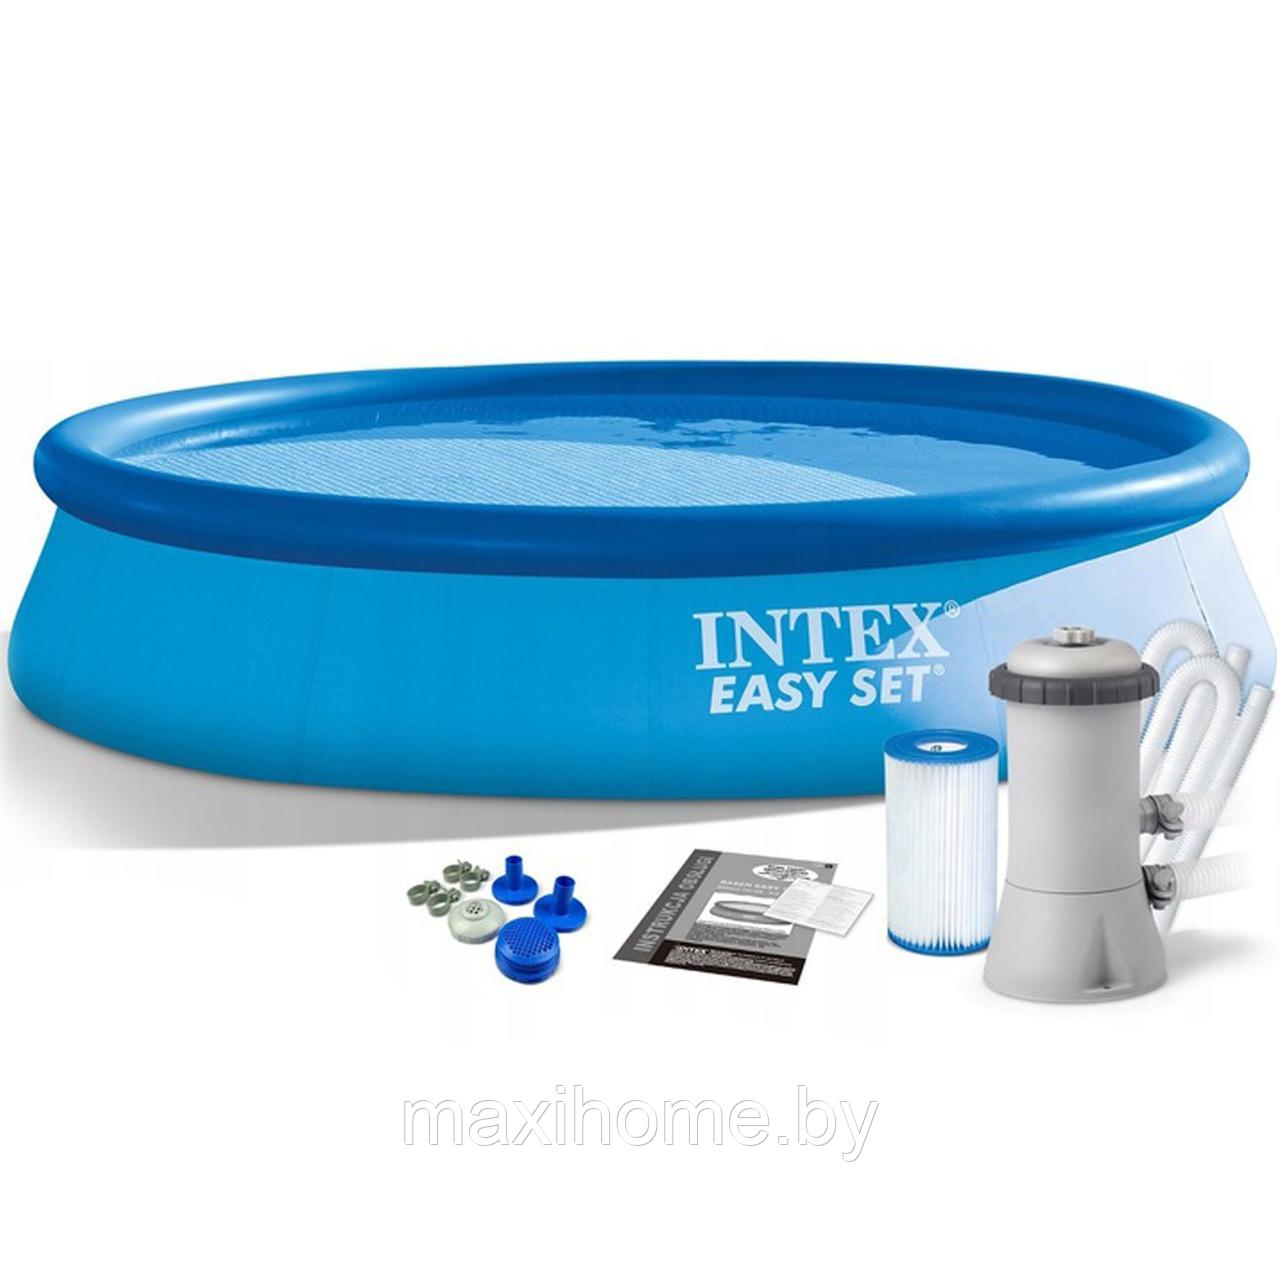 Надувной бассейн Intex Easy Set Pool Set 28132 366x76 см + фильтр-насос и картридж